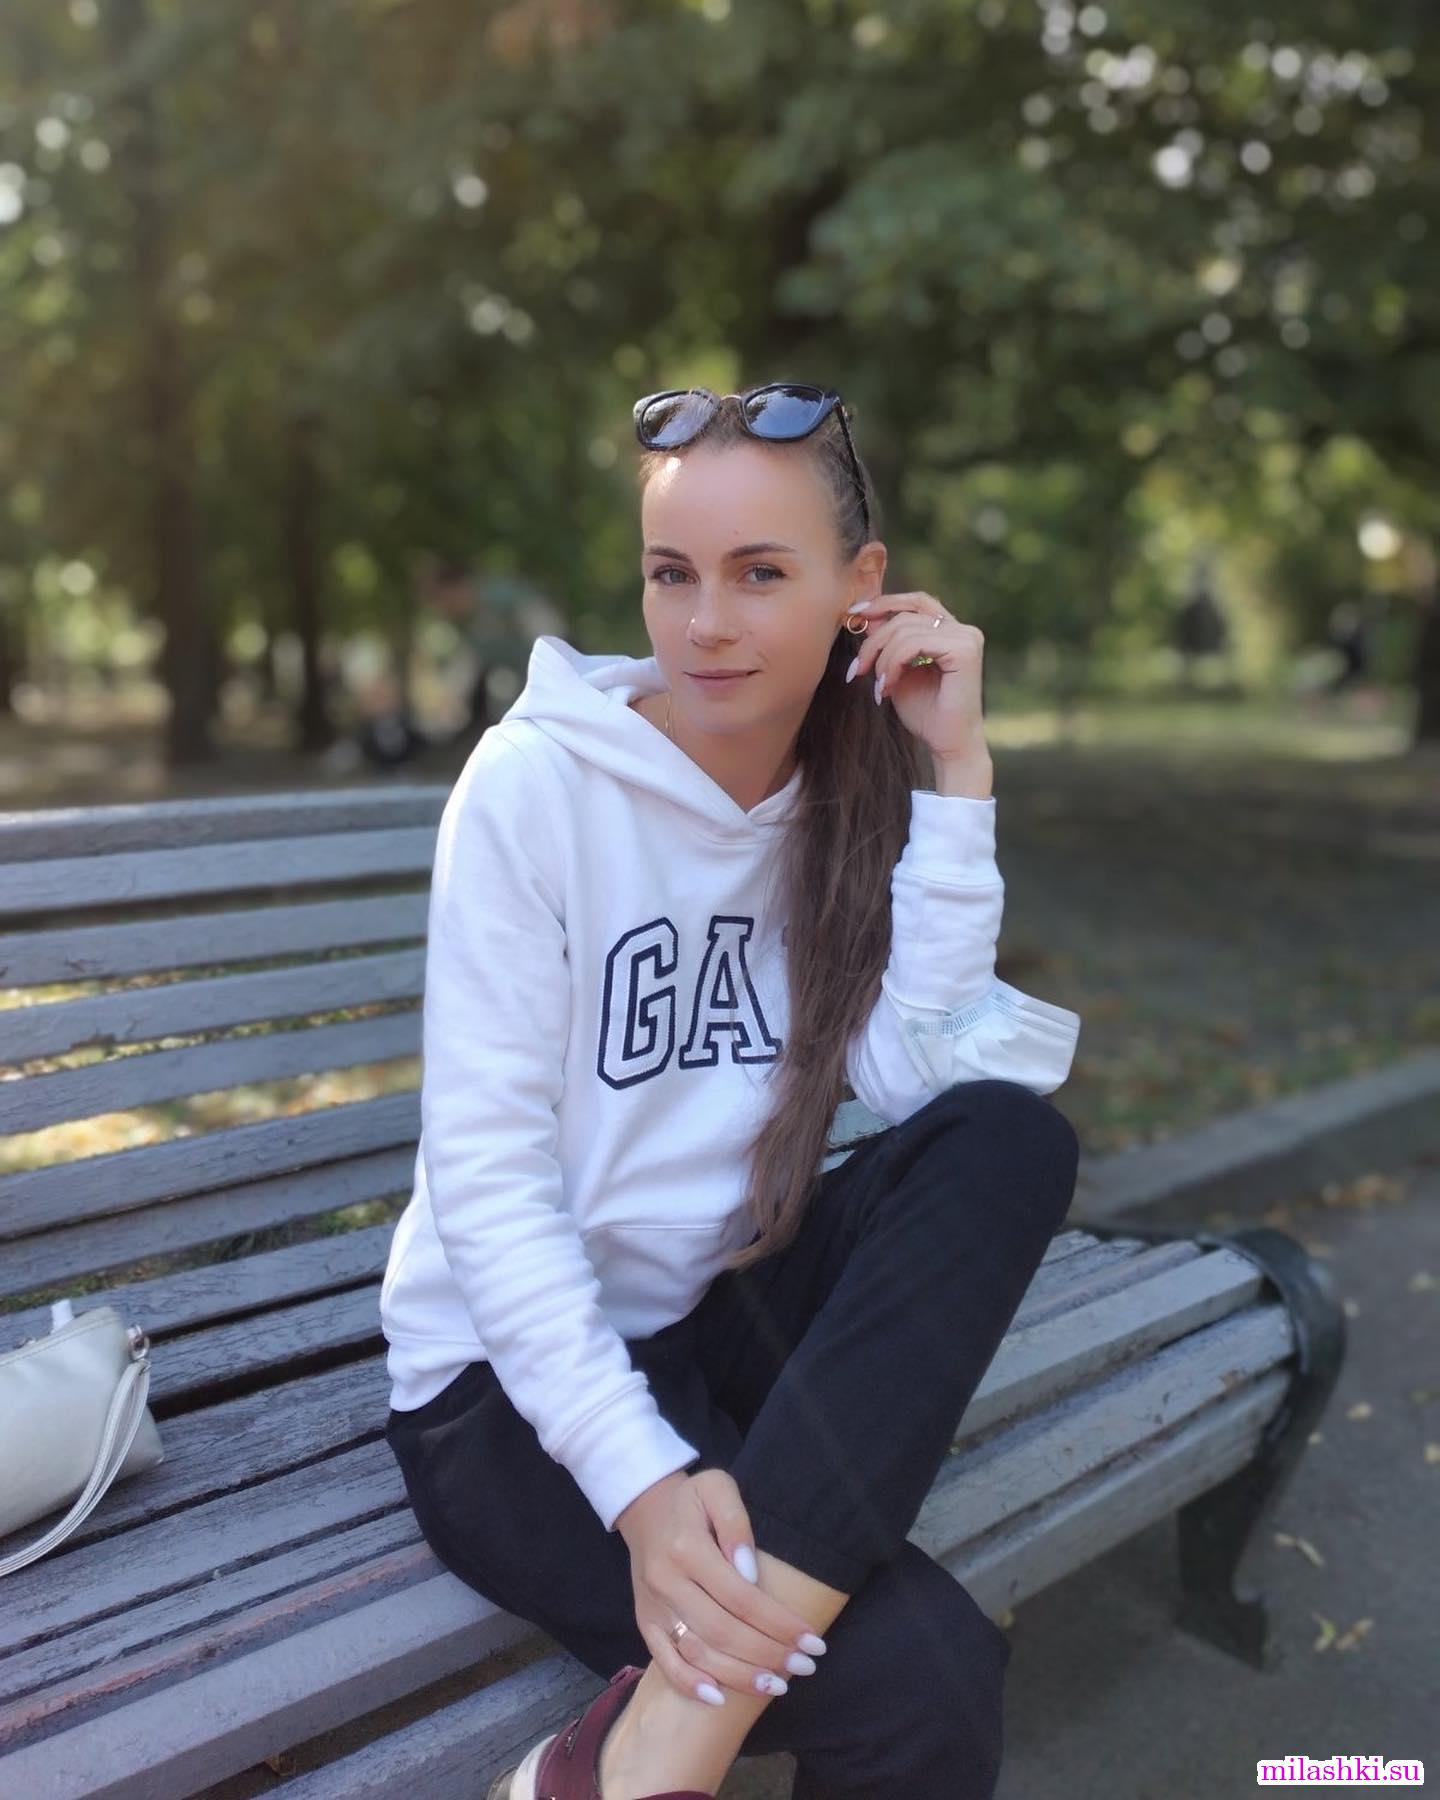 Длинноволосая девушка на скамейке в парке